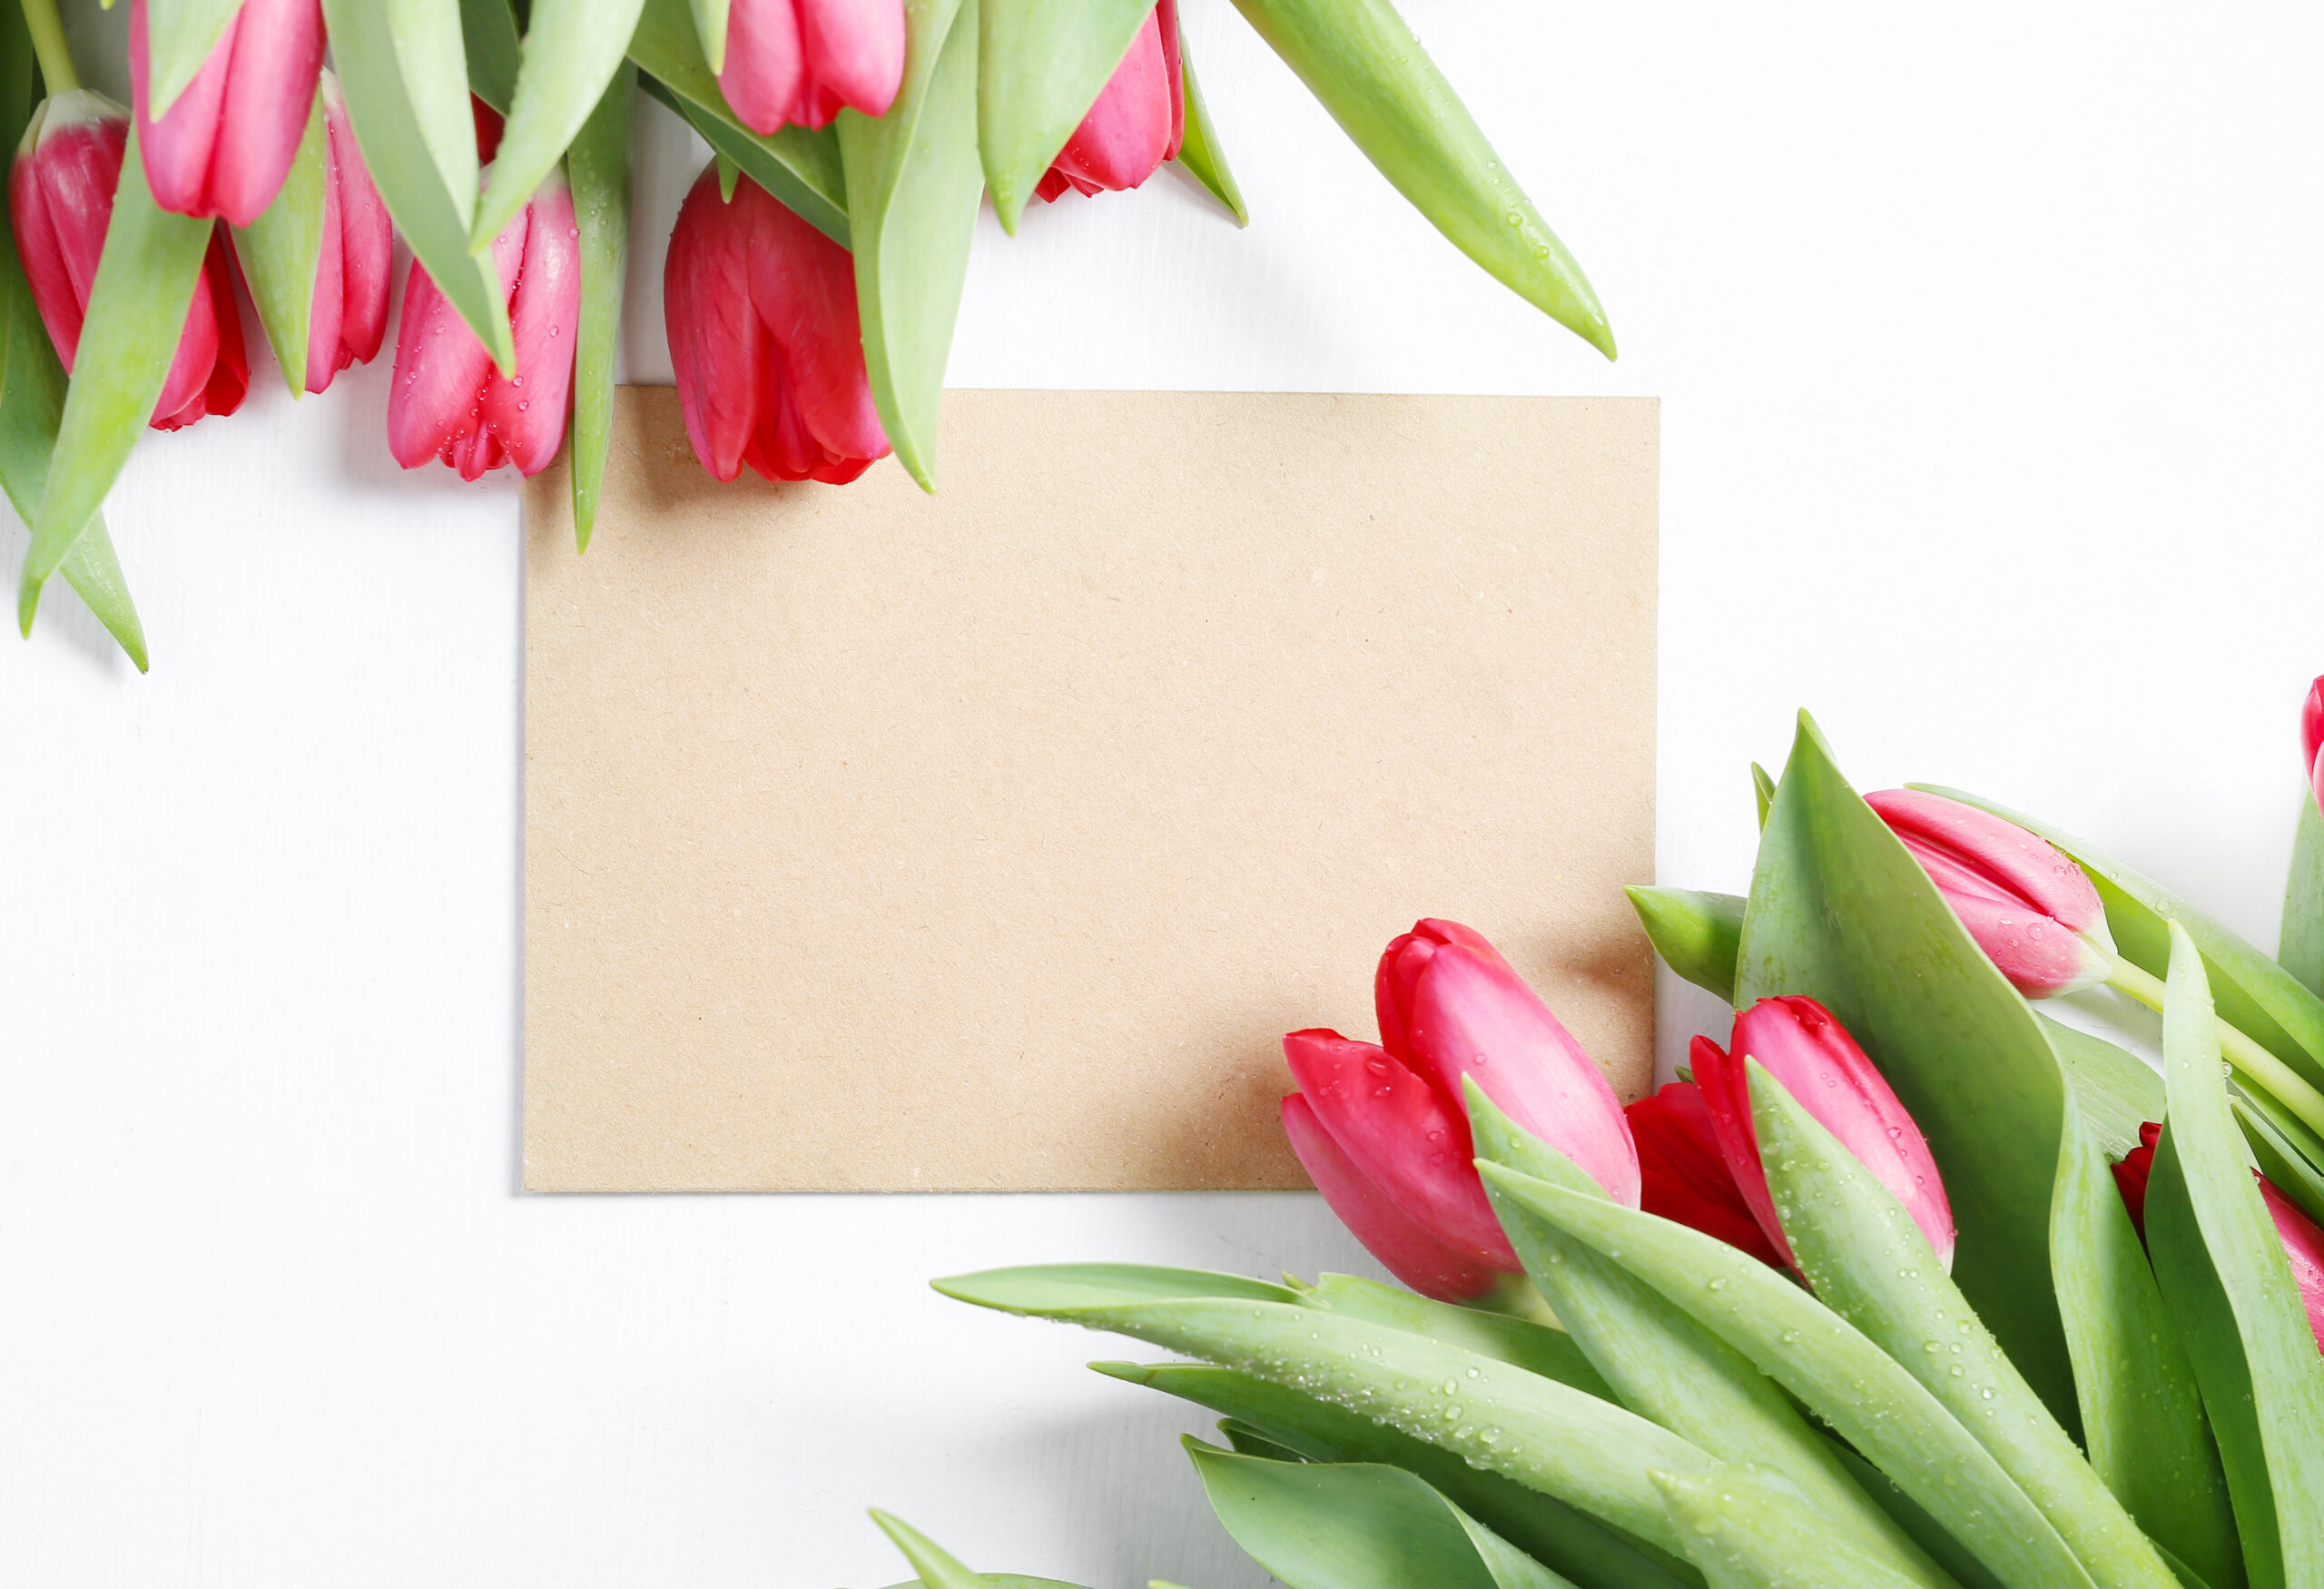 dan žena, čestitke za dan žena, dan žena voščilo, voščilo za dan žena, materinski dan, tulipani, rdeči tulipani, šopek rož, žena, ženska, mama, 8. marec, 8. marec dan žena, materinski dan